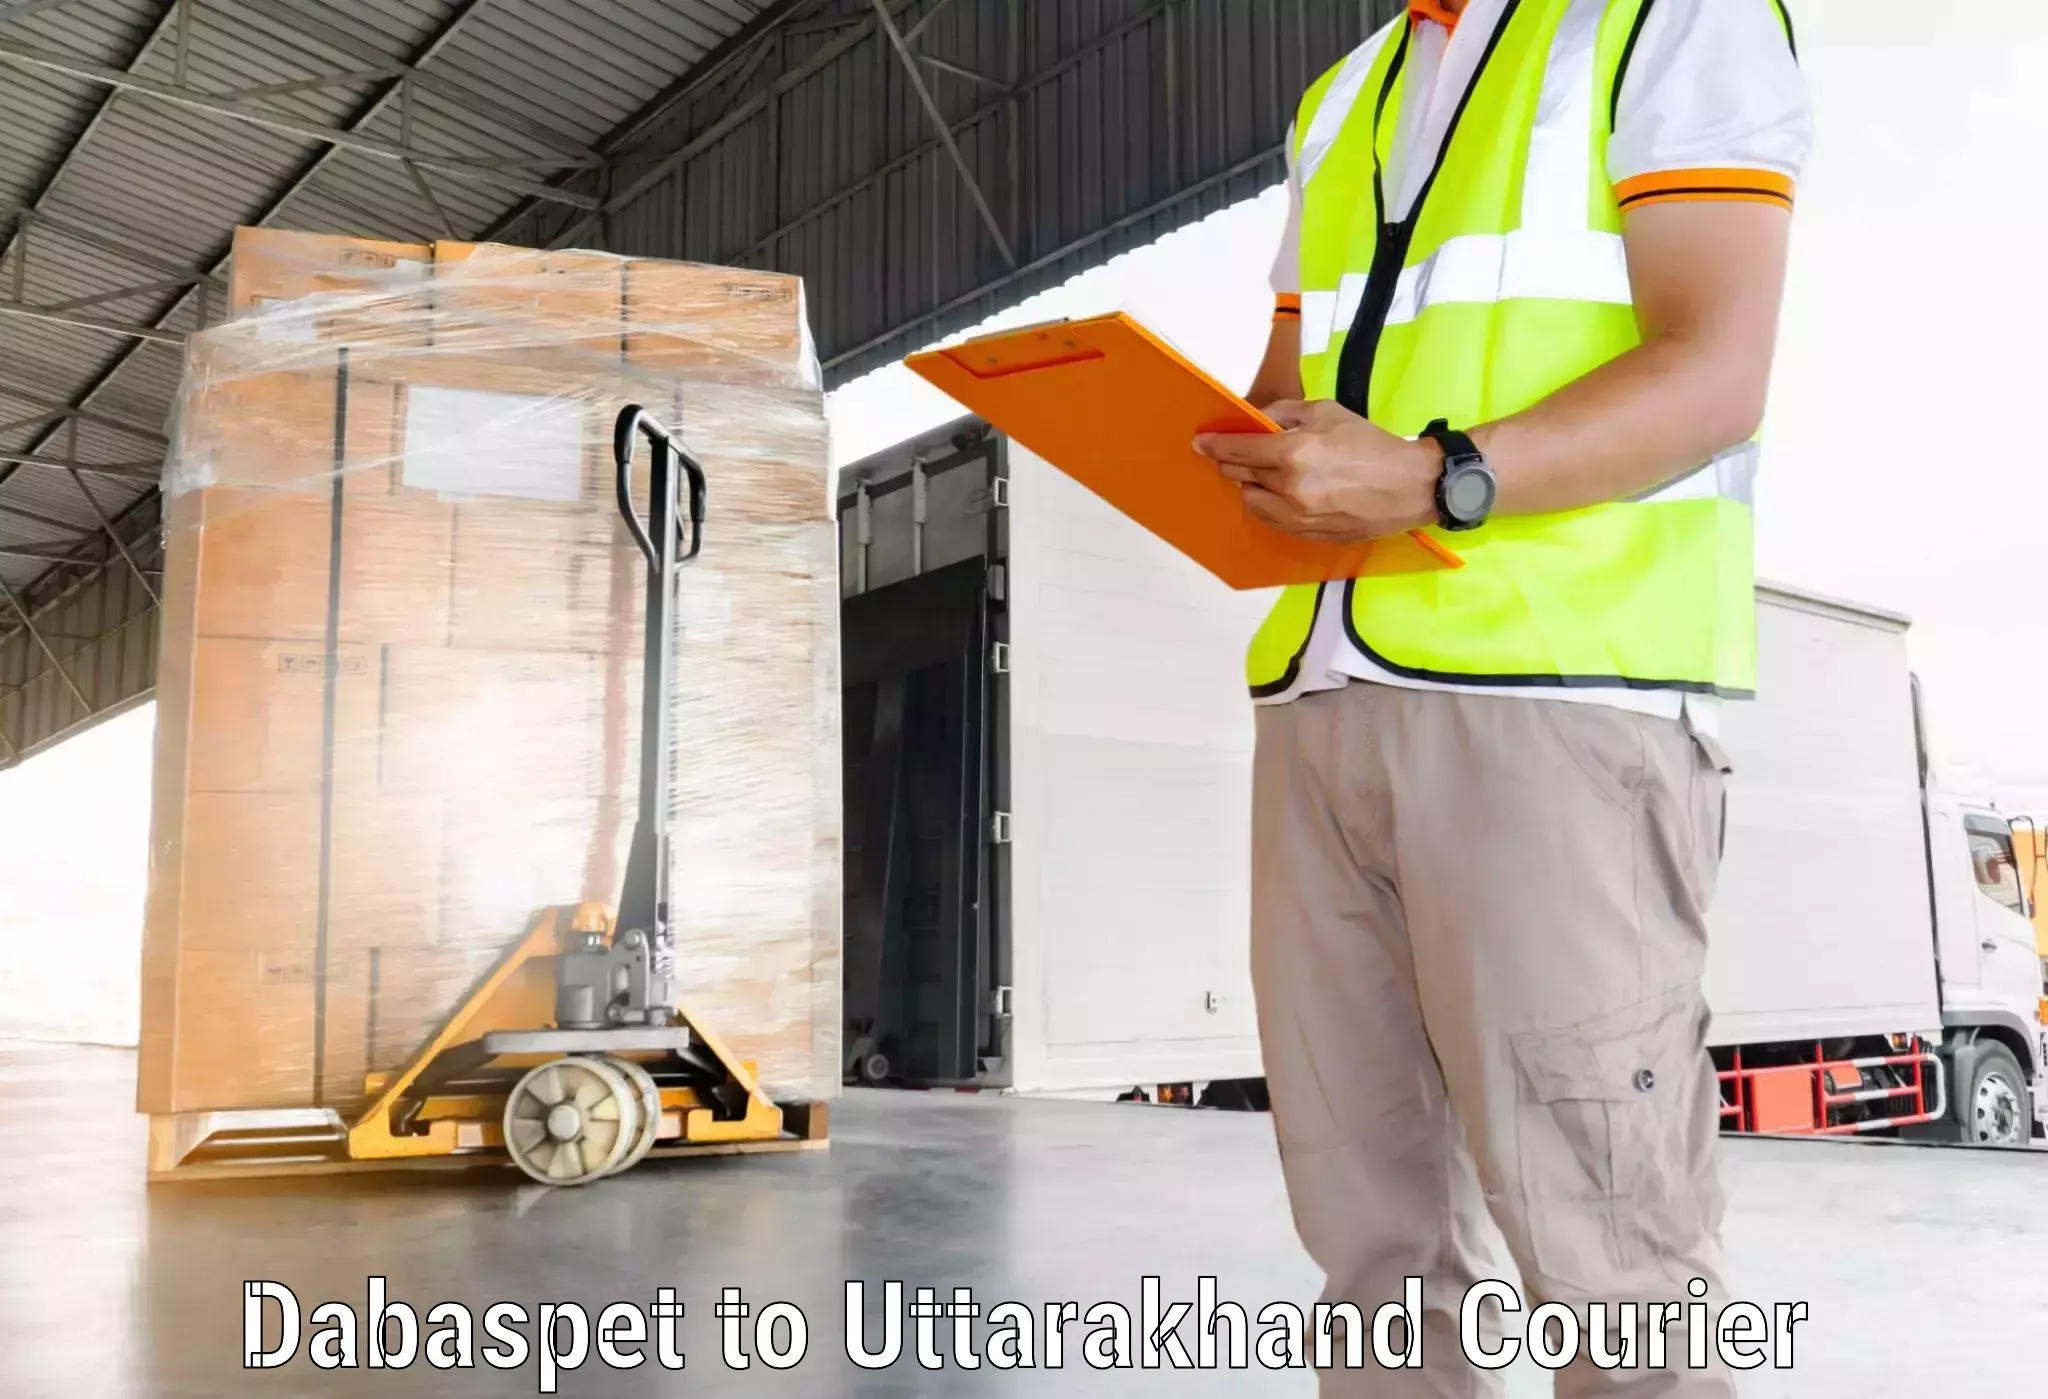 Logistics service provider Dabaspet to Rudraprayag